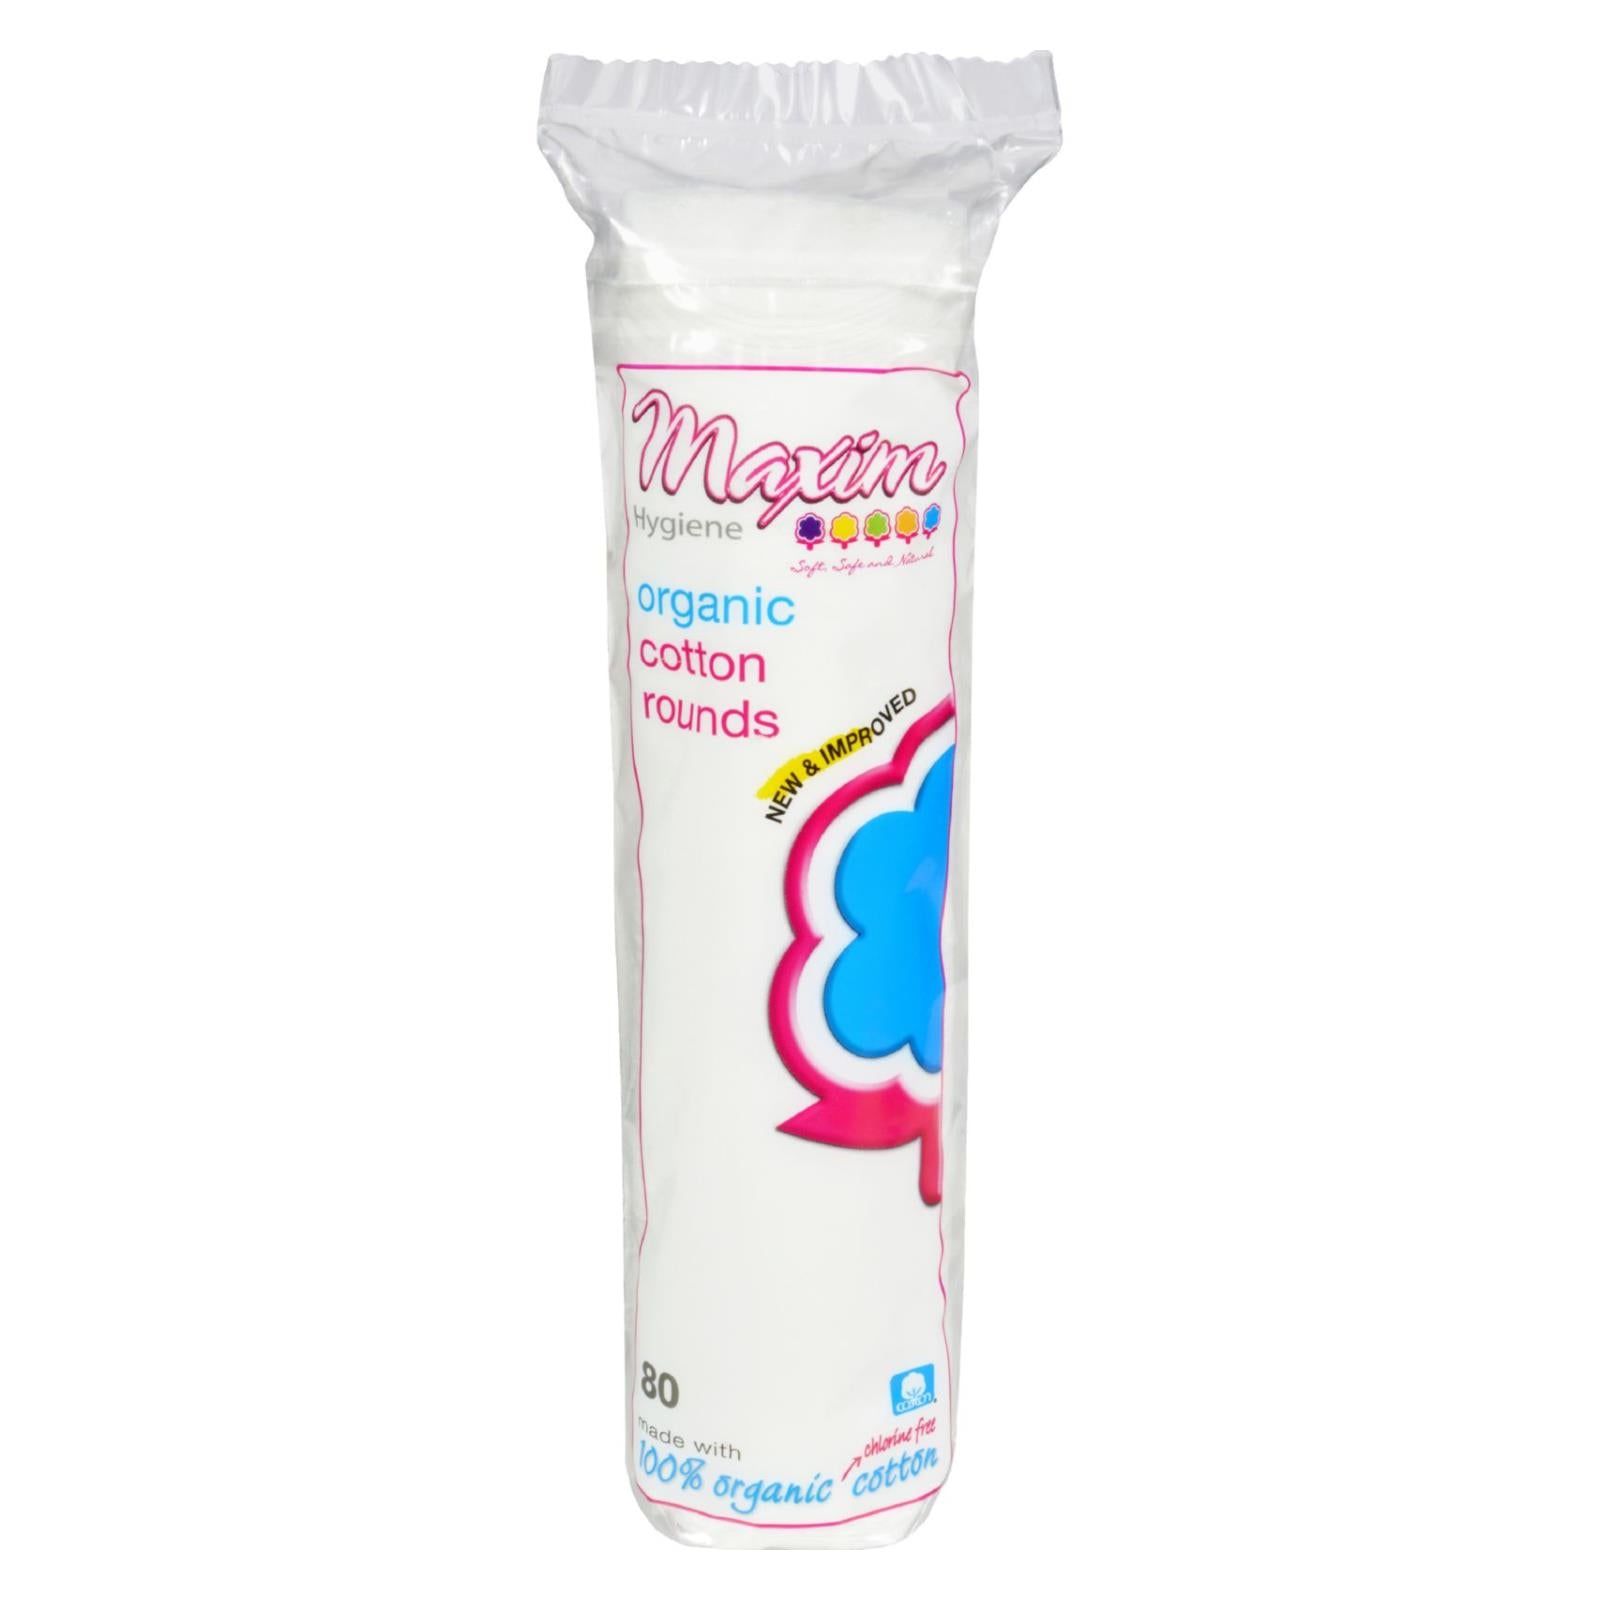 Produits d'hygiène Maxim, Rondelles de coton biologique Maxim Hygiene - 80 rondelles